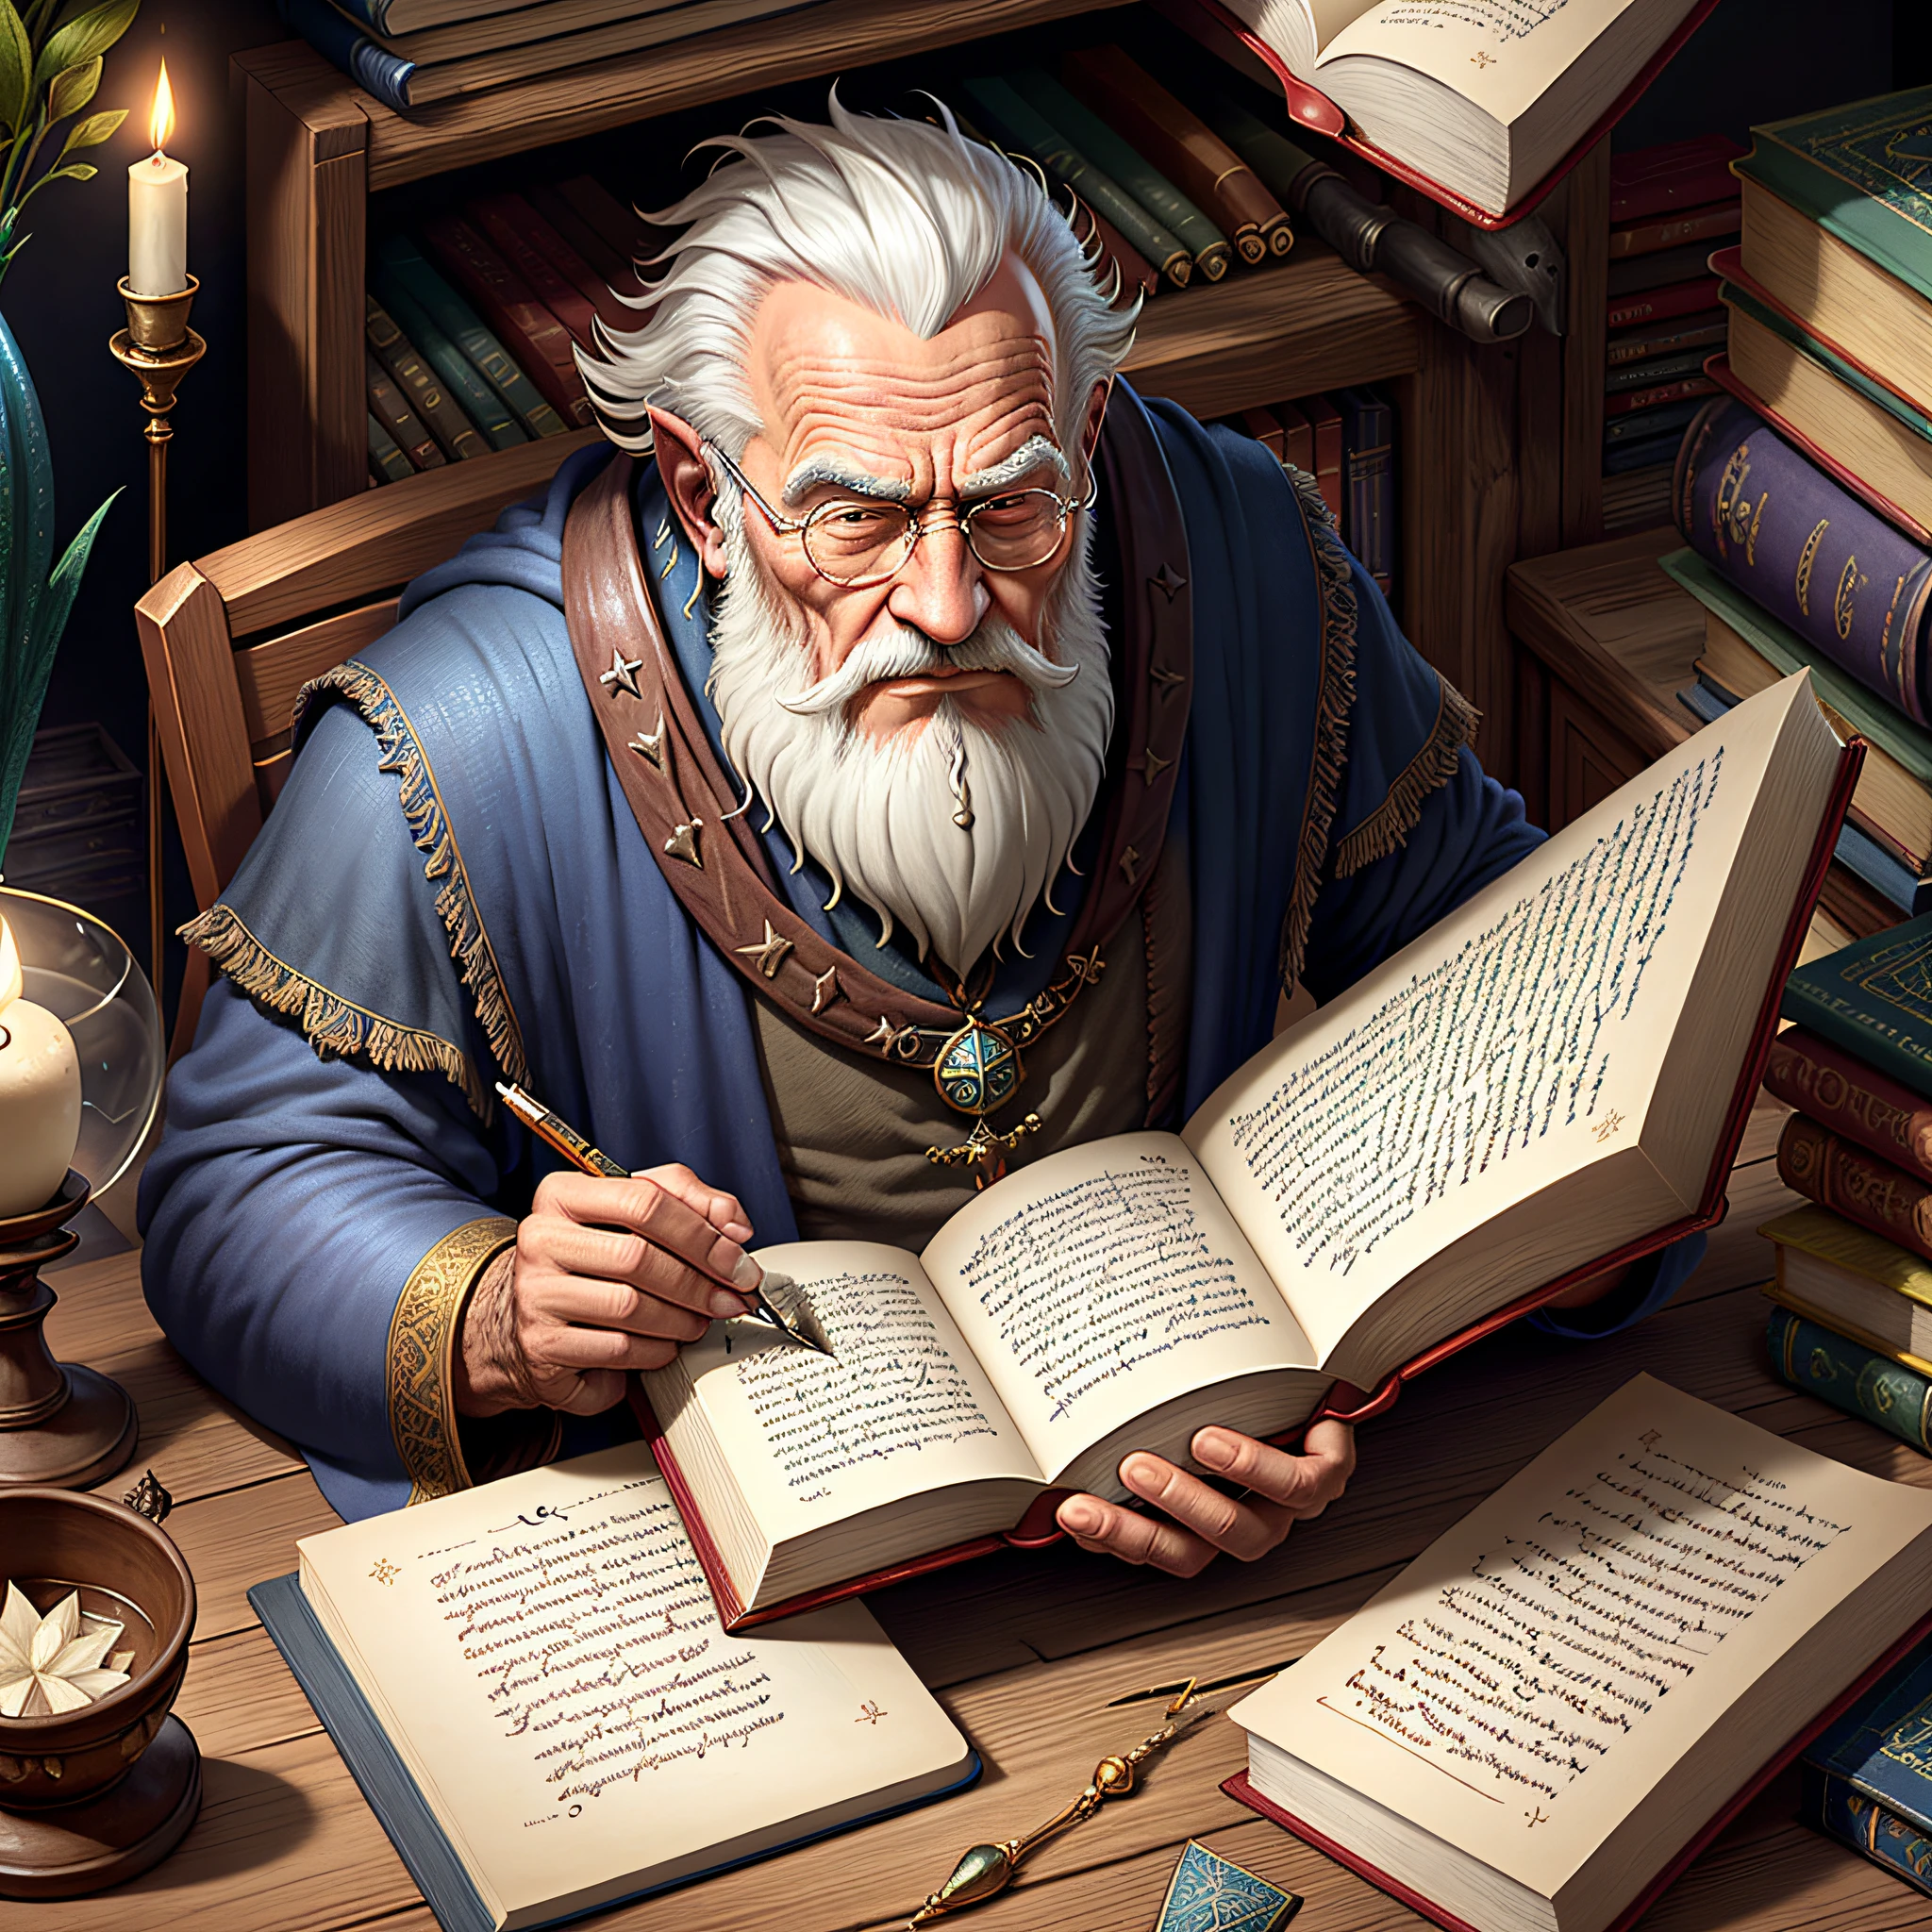 صورة العصور الوسطى, خيالي, معالج رجل عجوز يعمل على تأليف كتاب سحري في مكتبة بها الكثير من التكنولوجيا والواقعية الشديدة,